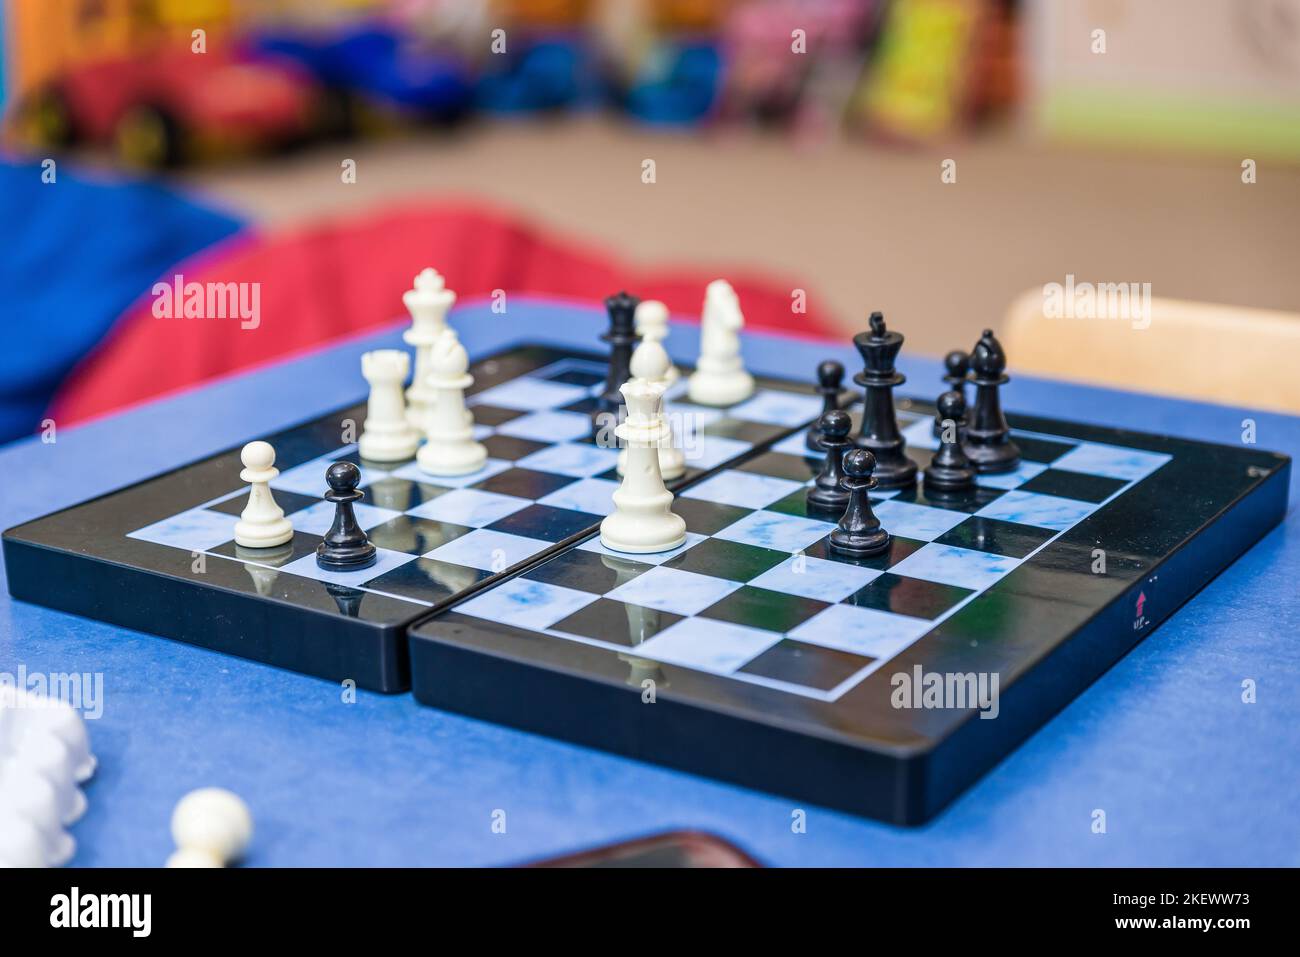 jouer aux échecs, chessboard vue de côté, main en déplaçant une pièce d'échecs, sur le point de l'attraper, gros plan. Faire un mouvement, stratégie, planification, défi et succès ab Banque D'Images